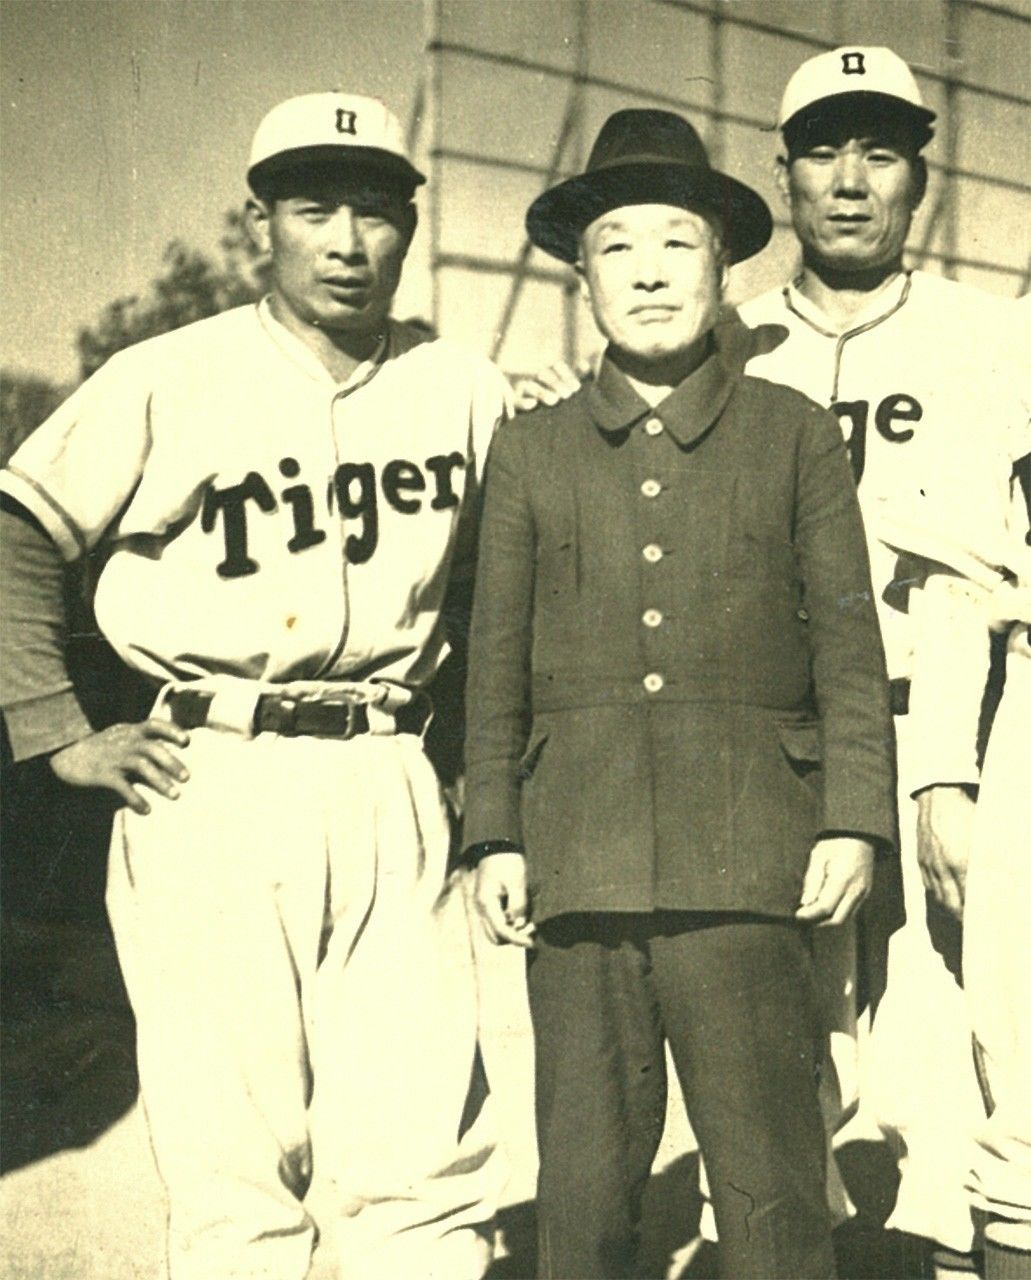 效力阪神時代的恩師近藤兵太郎（左起第2人）與一起拍攝照片的吳昌征（左端、石井昌博提供）